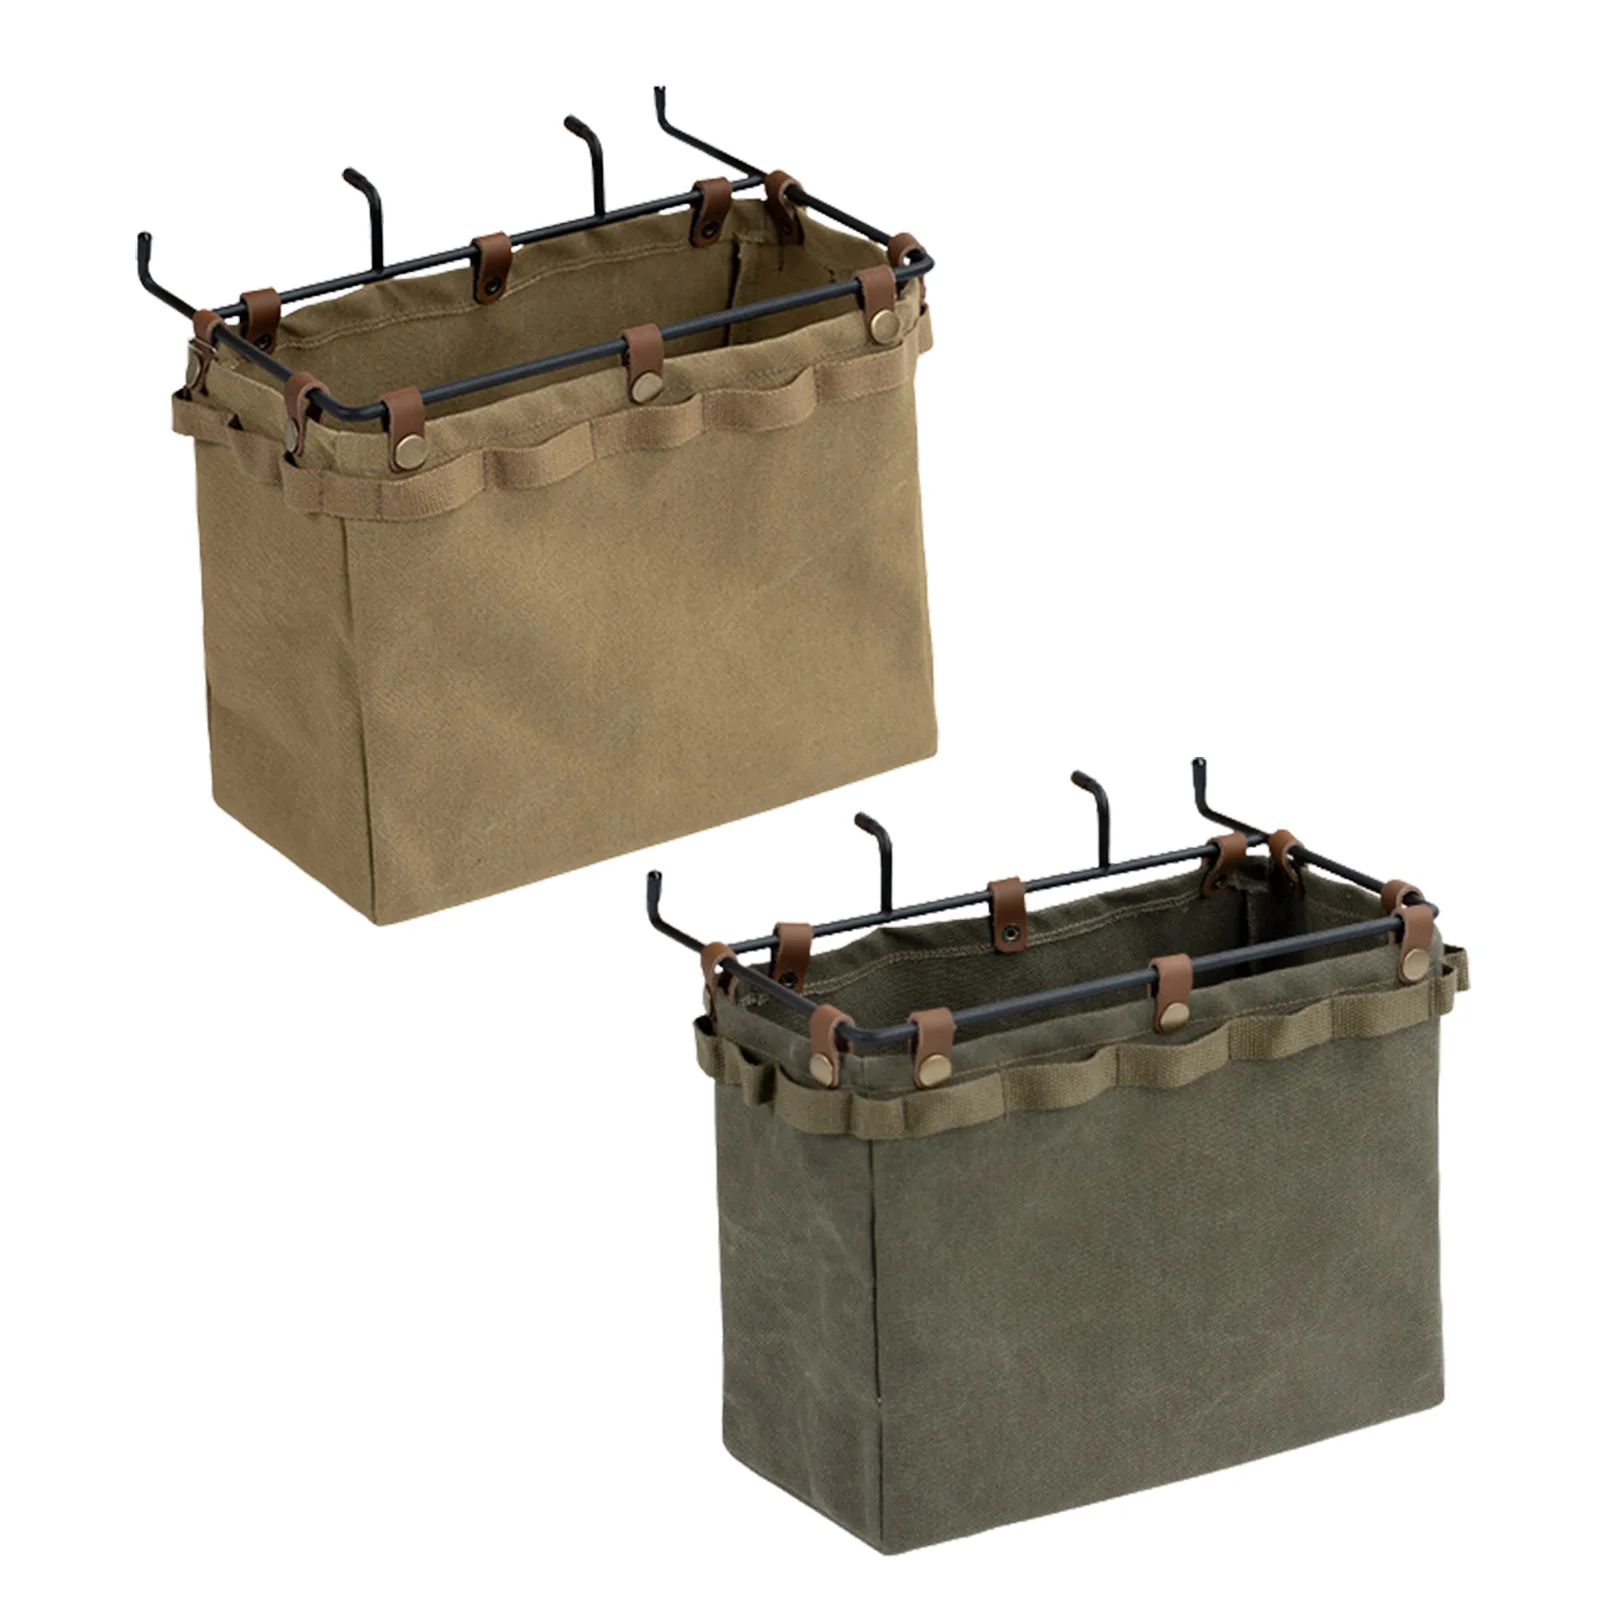 Camping Table Side Hangings Bag Desk Side Storage Bag Deskside Bags Pouch With Slip Pocket Hard PP Board Support Suitable For